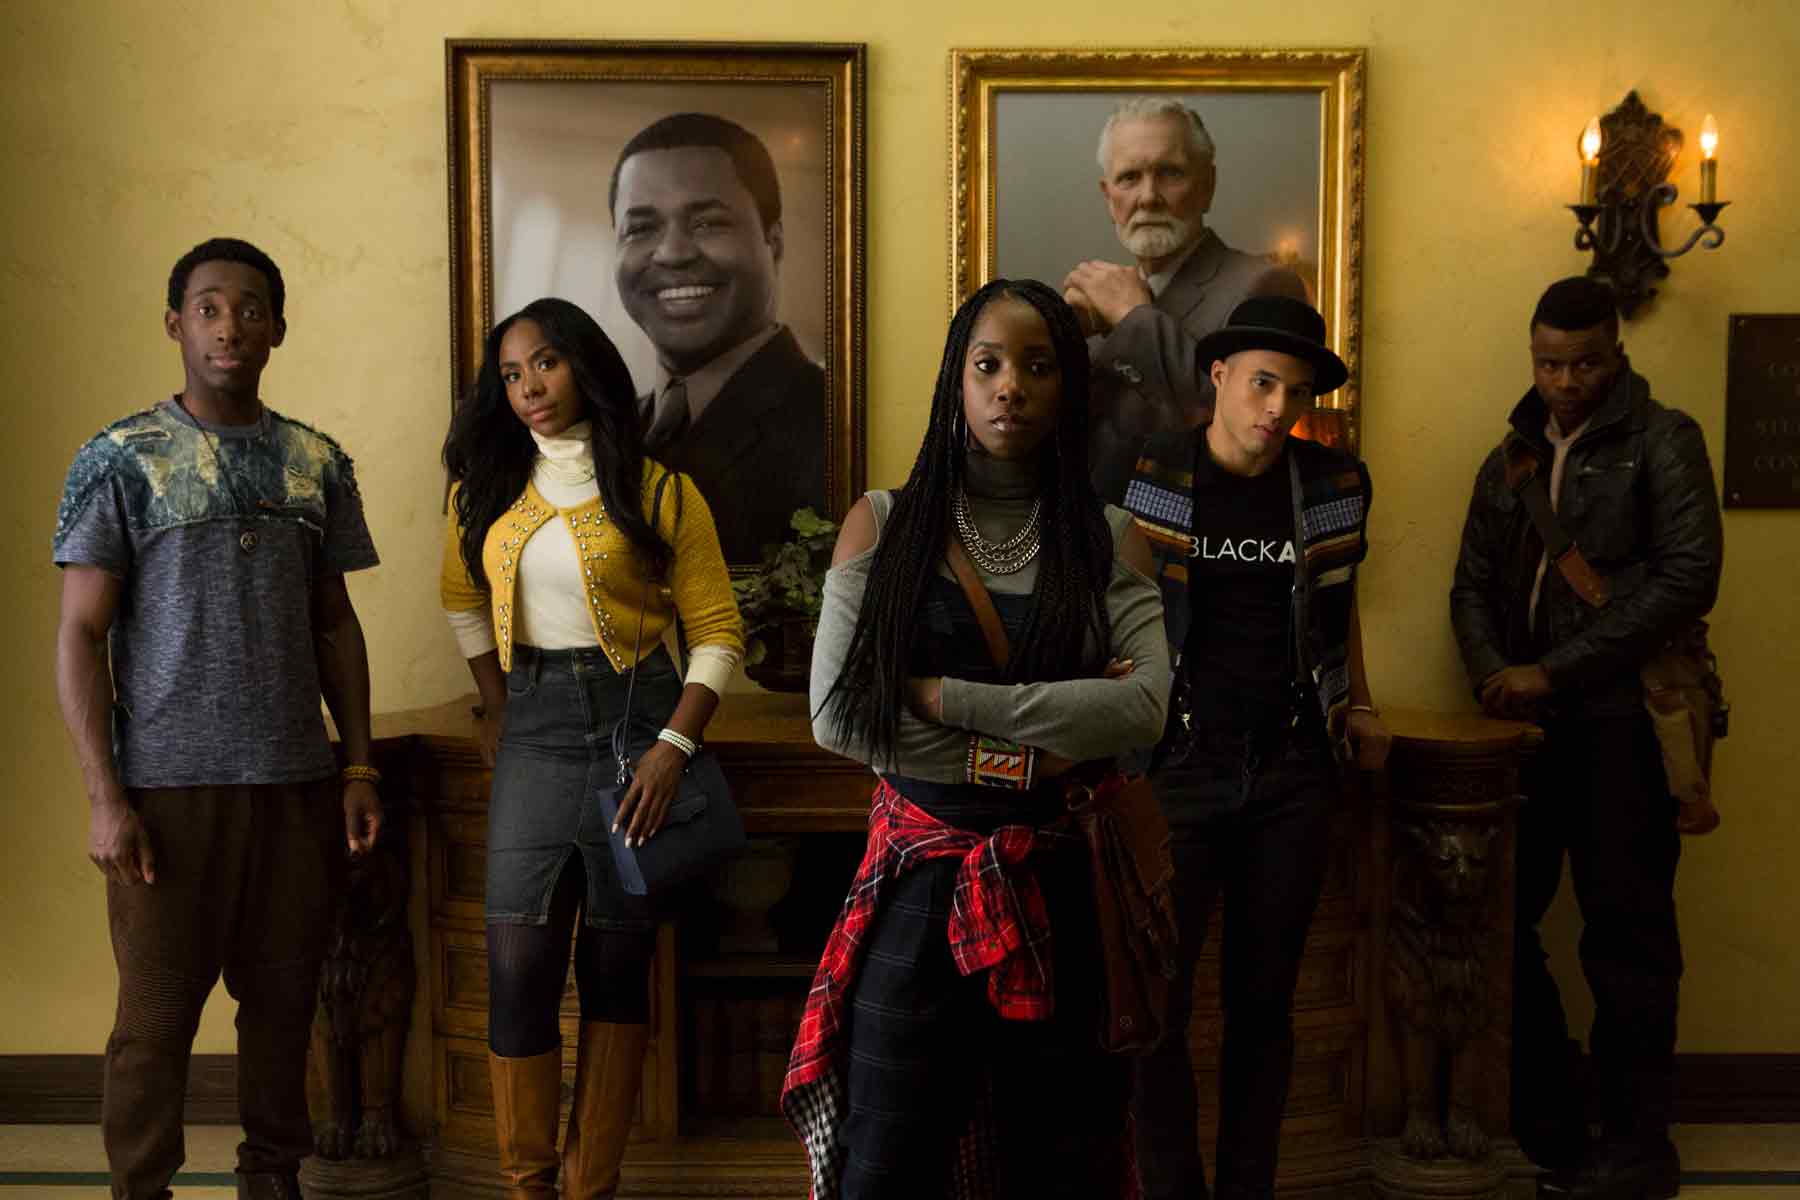 La brutalidad policial y el racismo institucionalizado contados por 5 creadores afroamericanos 1